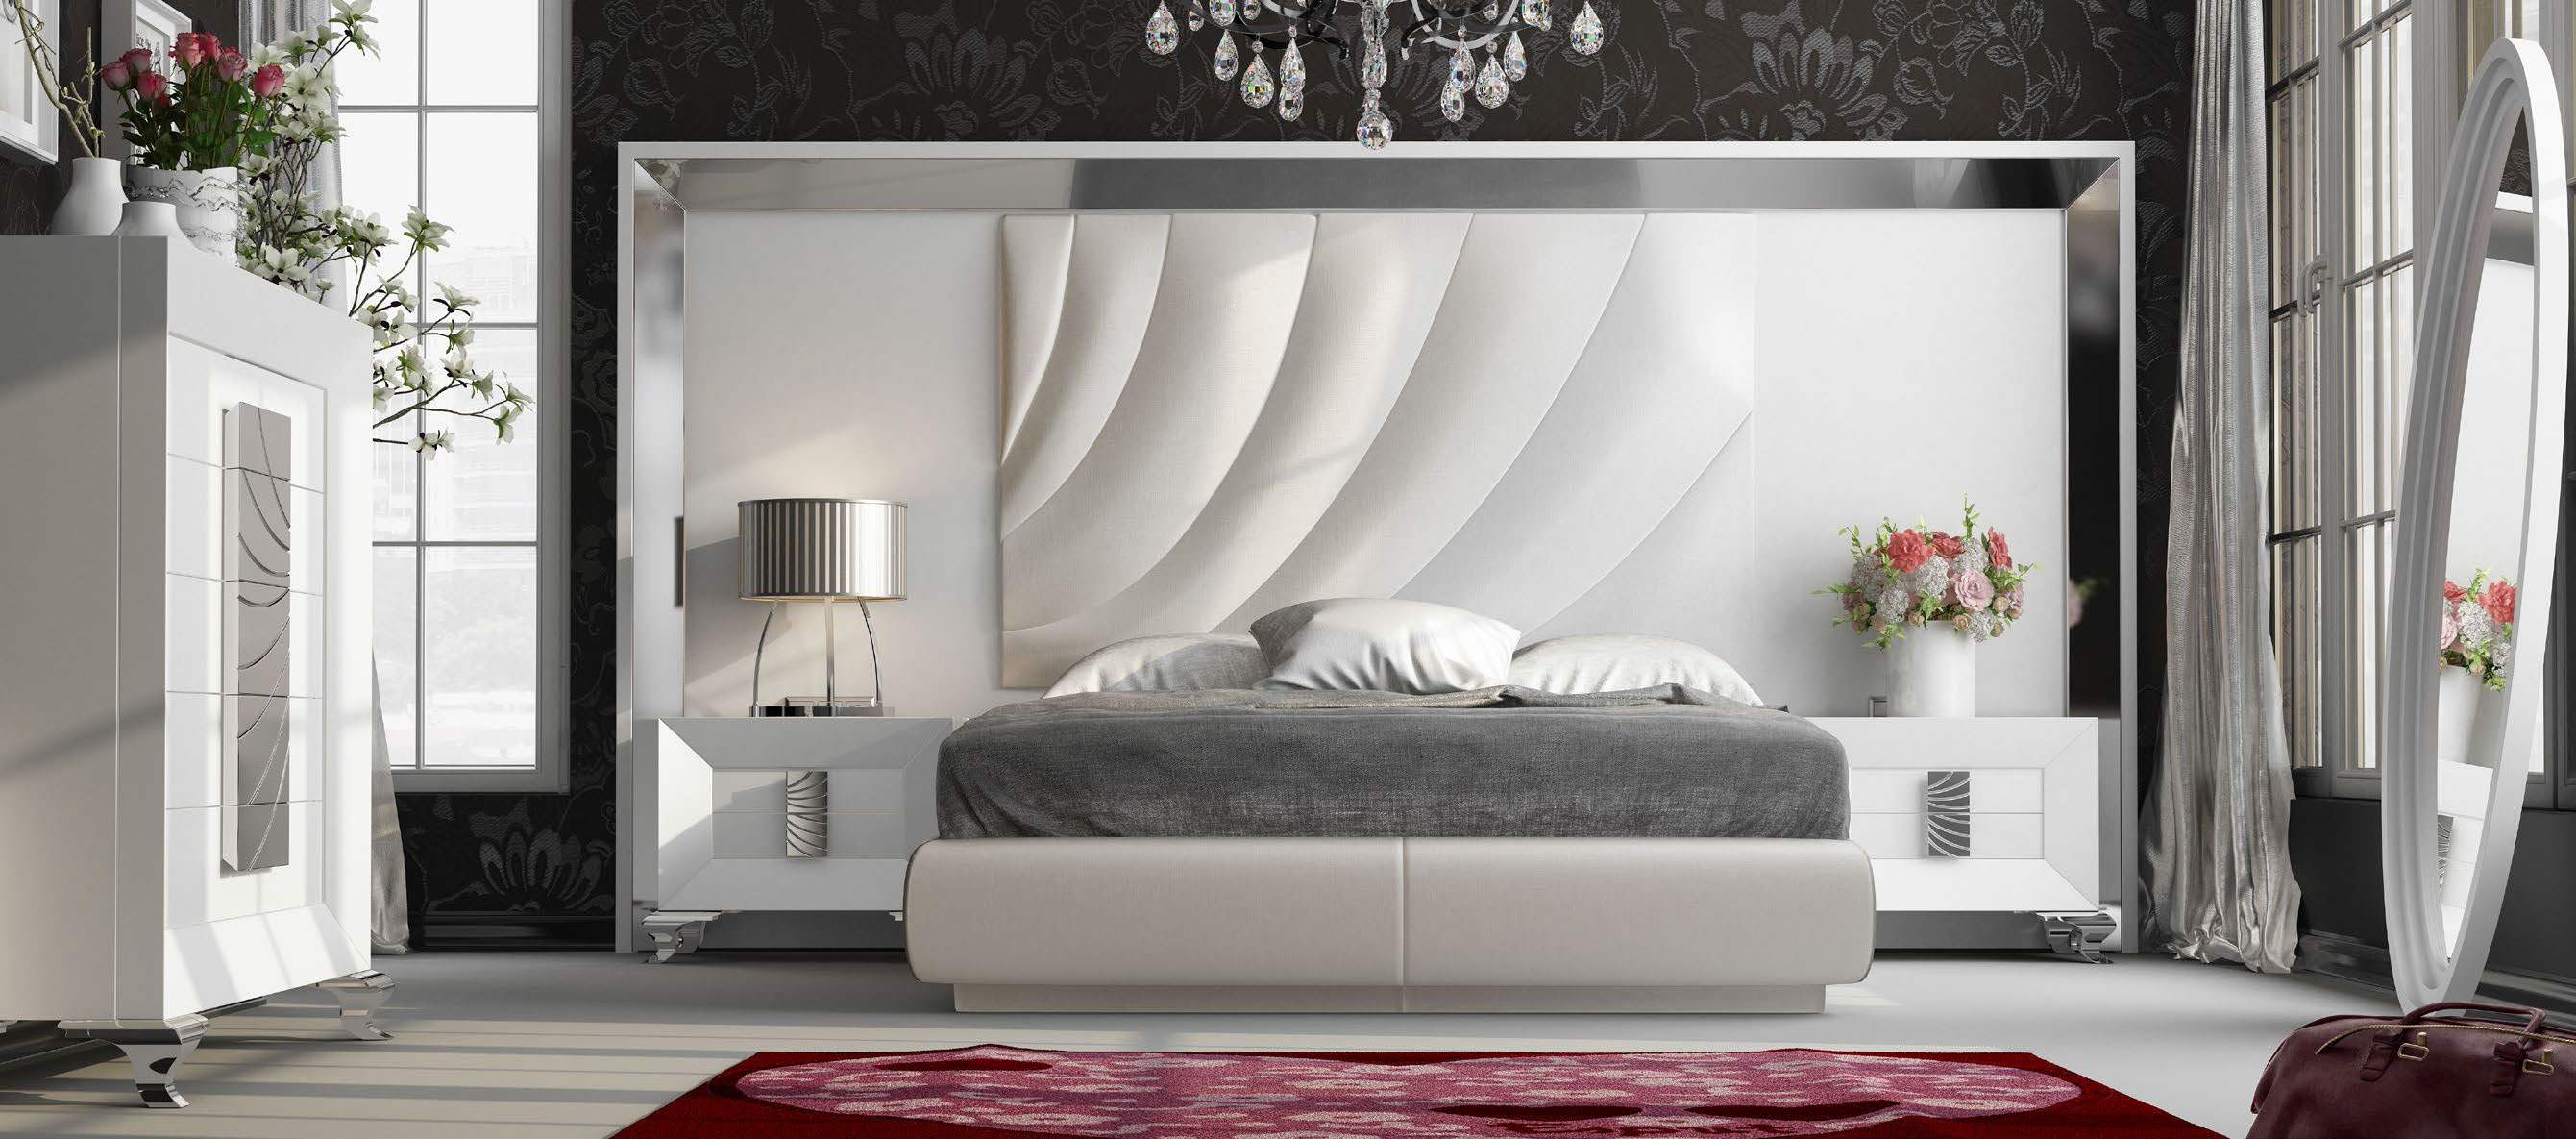 Brands Franco ENZO Bedrooms, Spain DOR 129